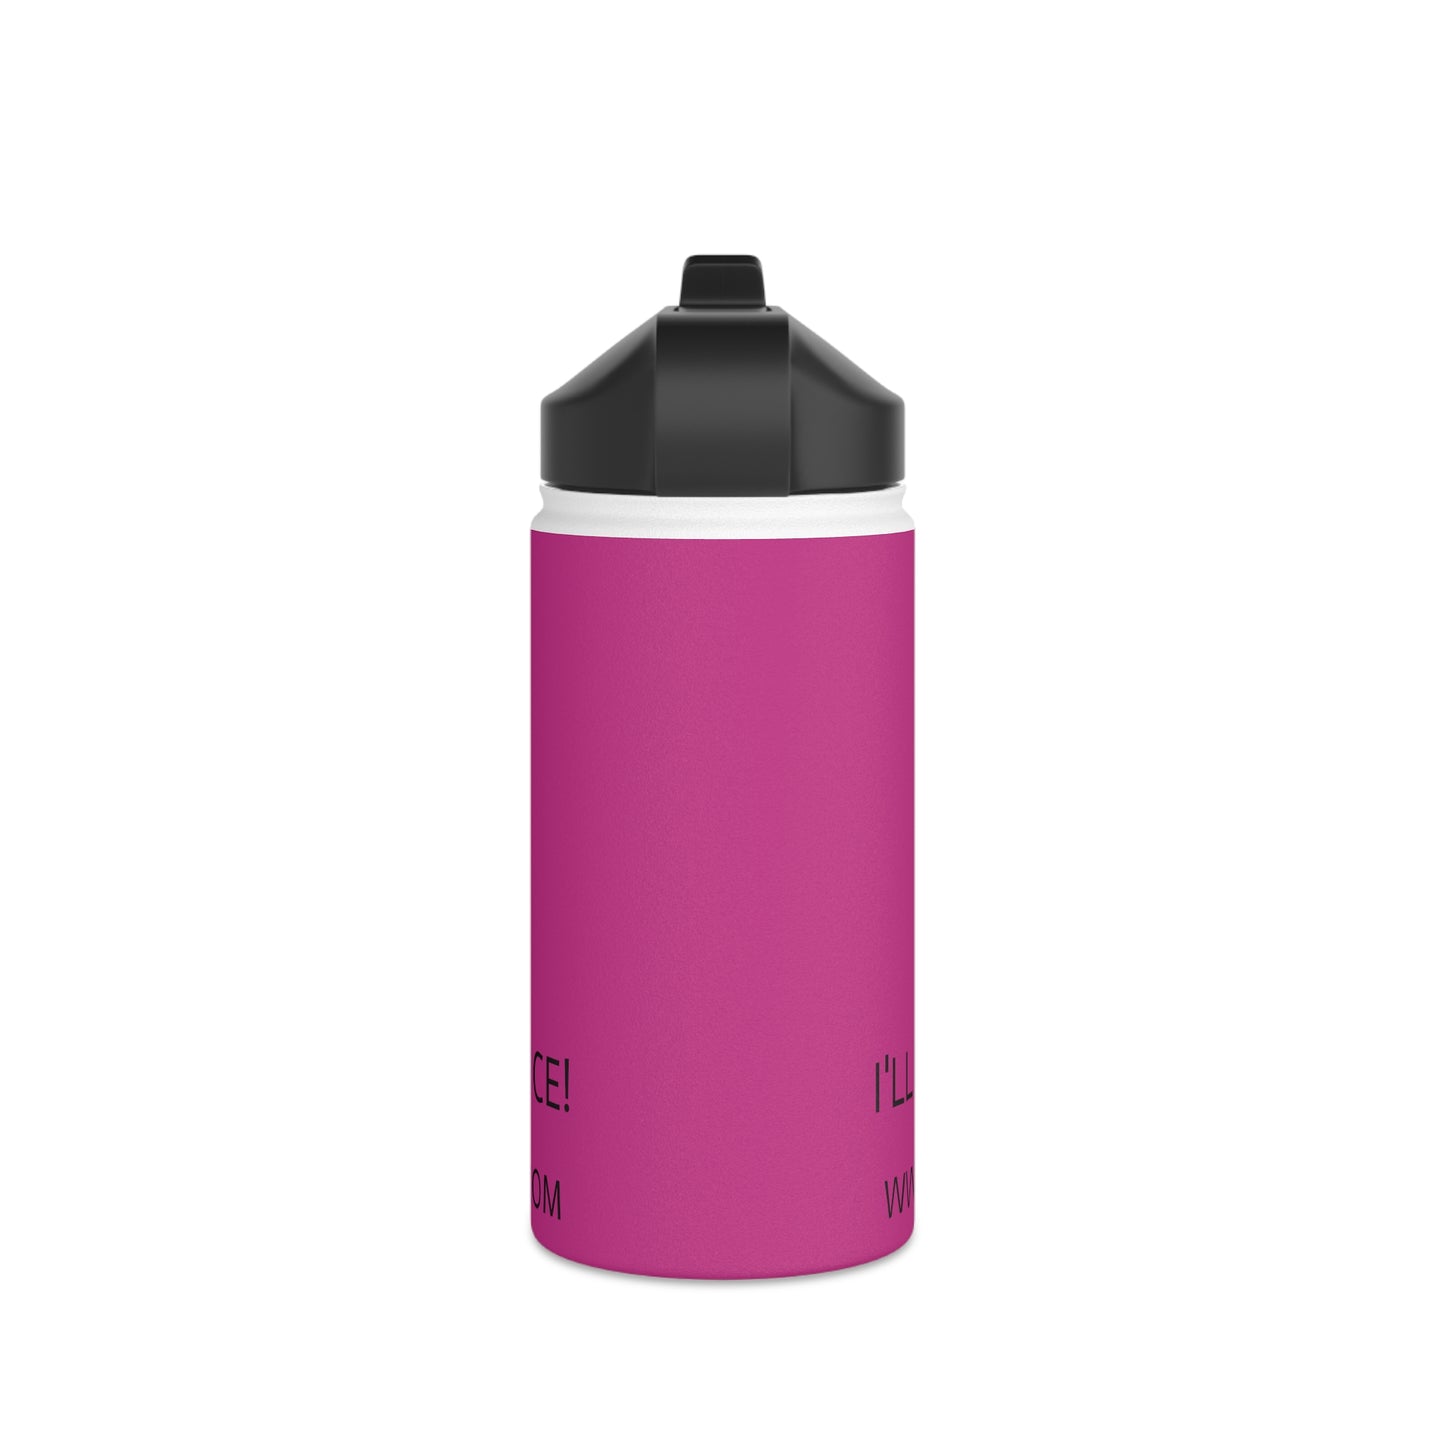 Stainless Steel Water Bottle, Standard Lid